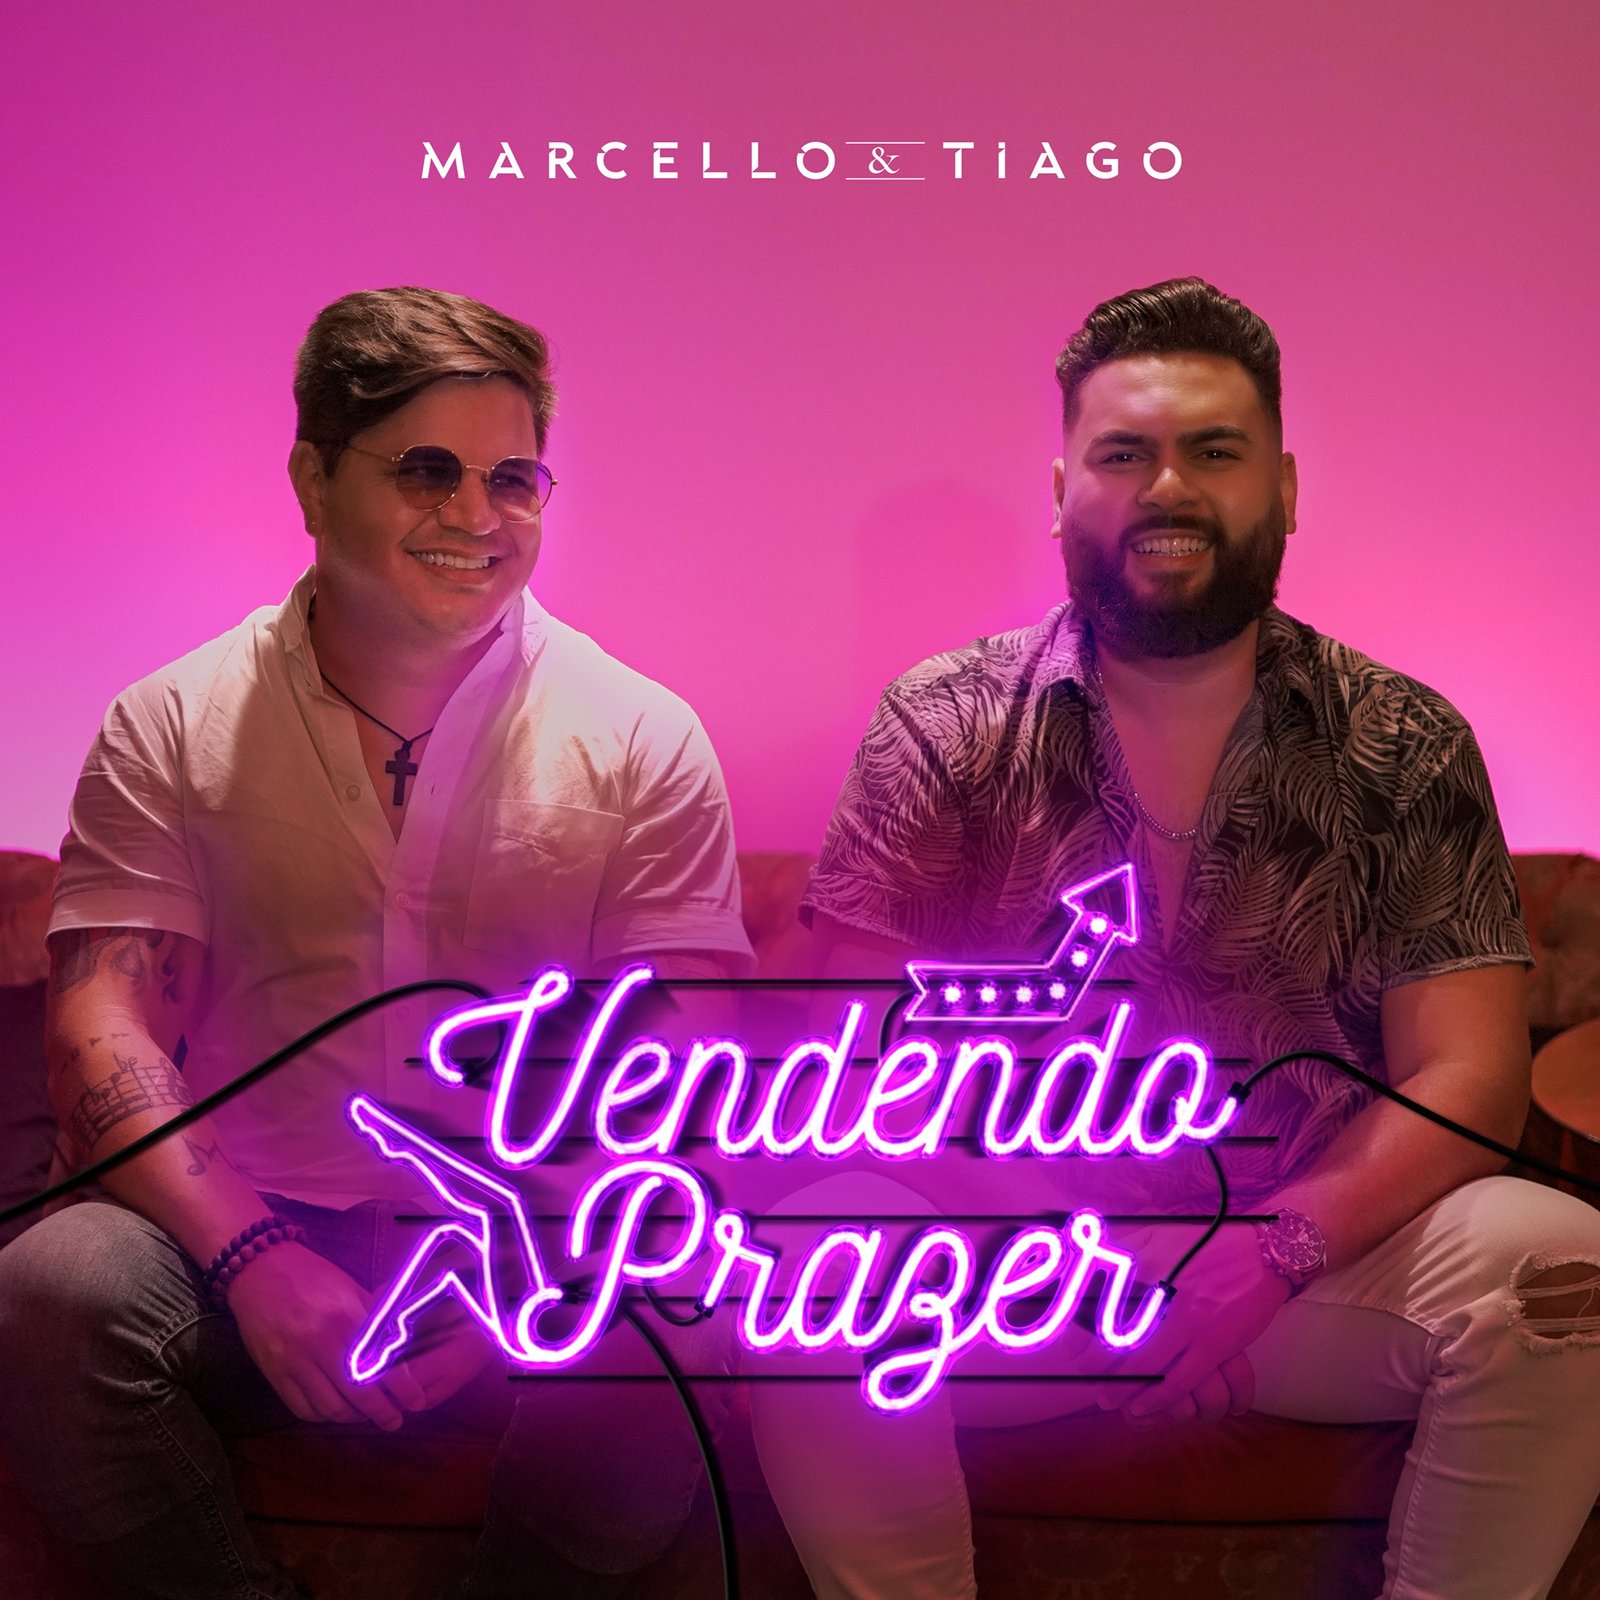 Marcello & Tiago